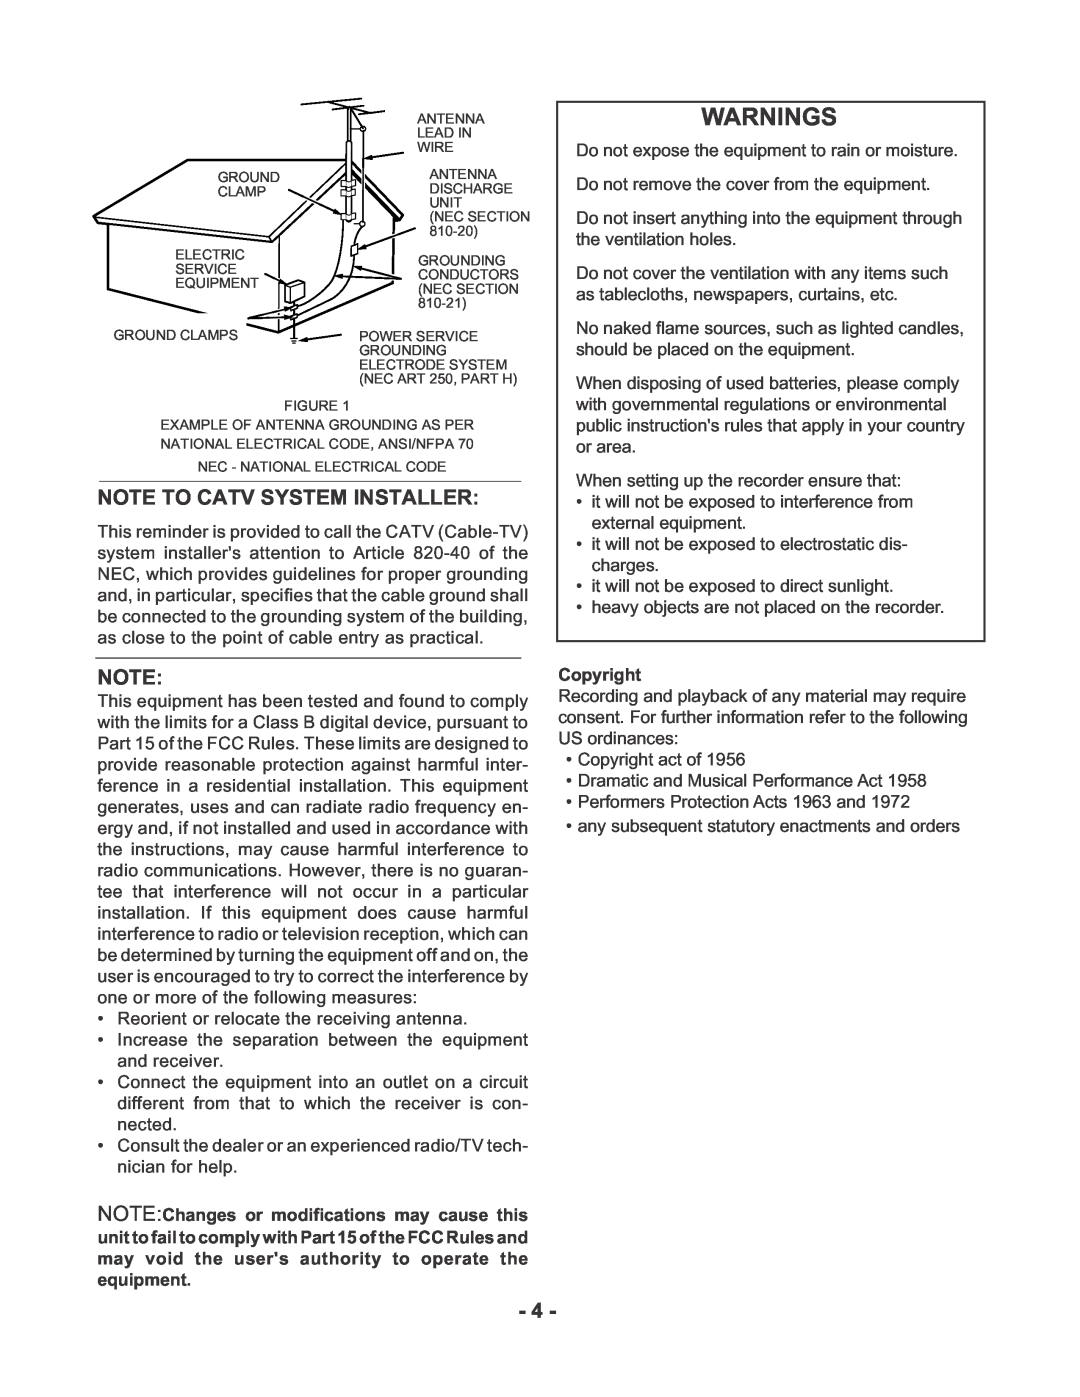 Marantz PMD670 manual Warnings, Note To Catv System Installer, Copyright 